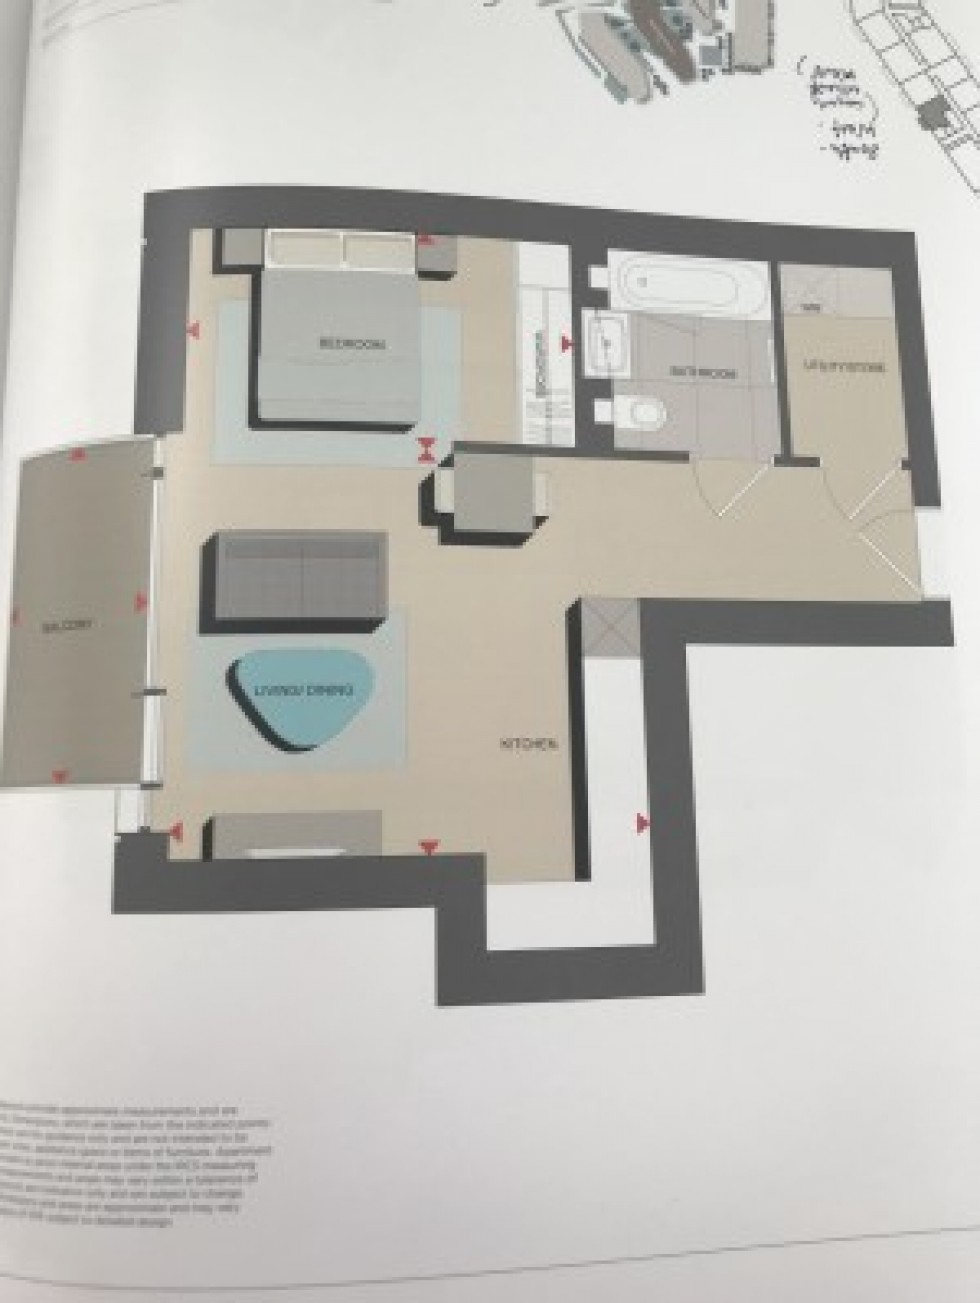 Floorplan for Biring House, Duke of Wellington Avenue, London